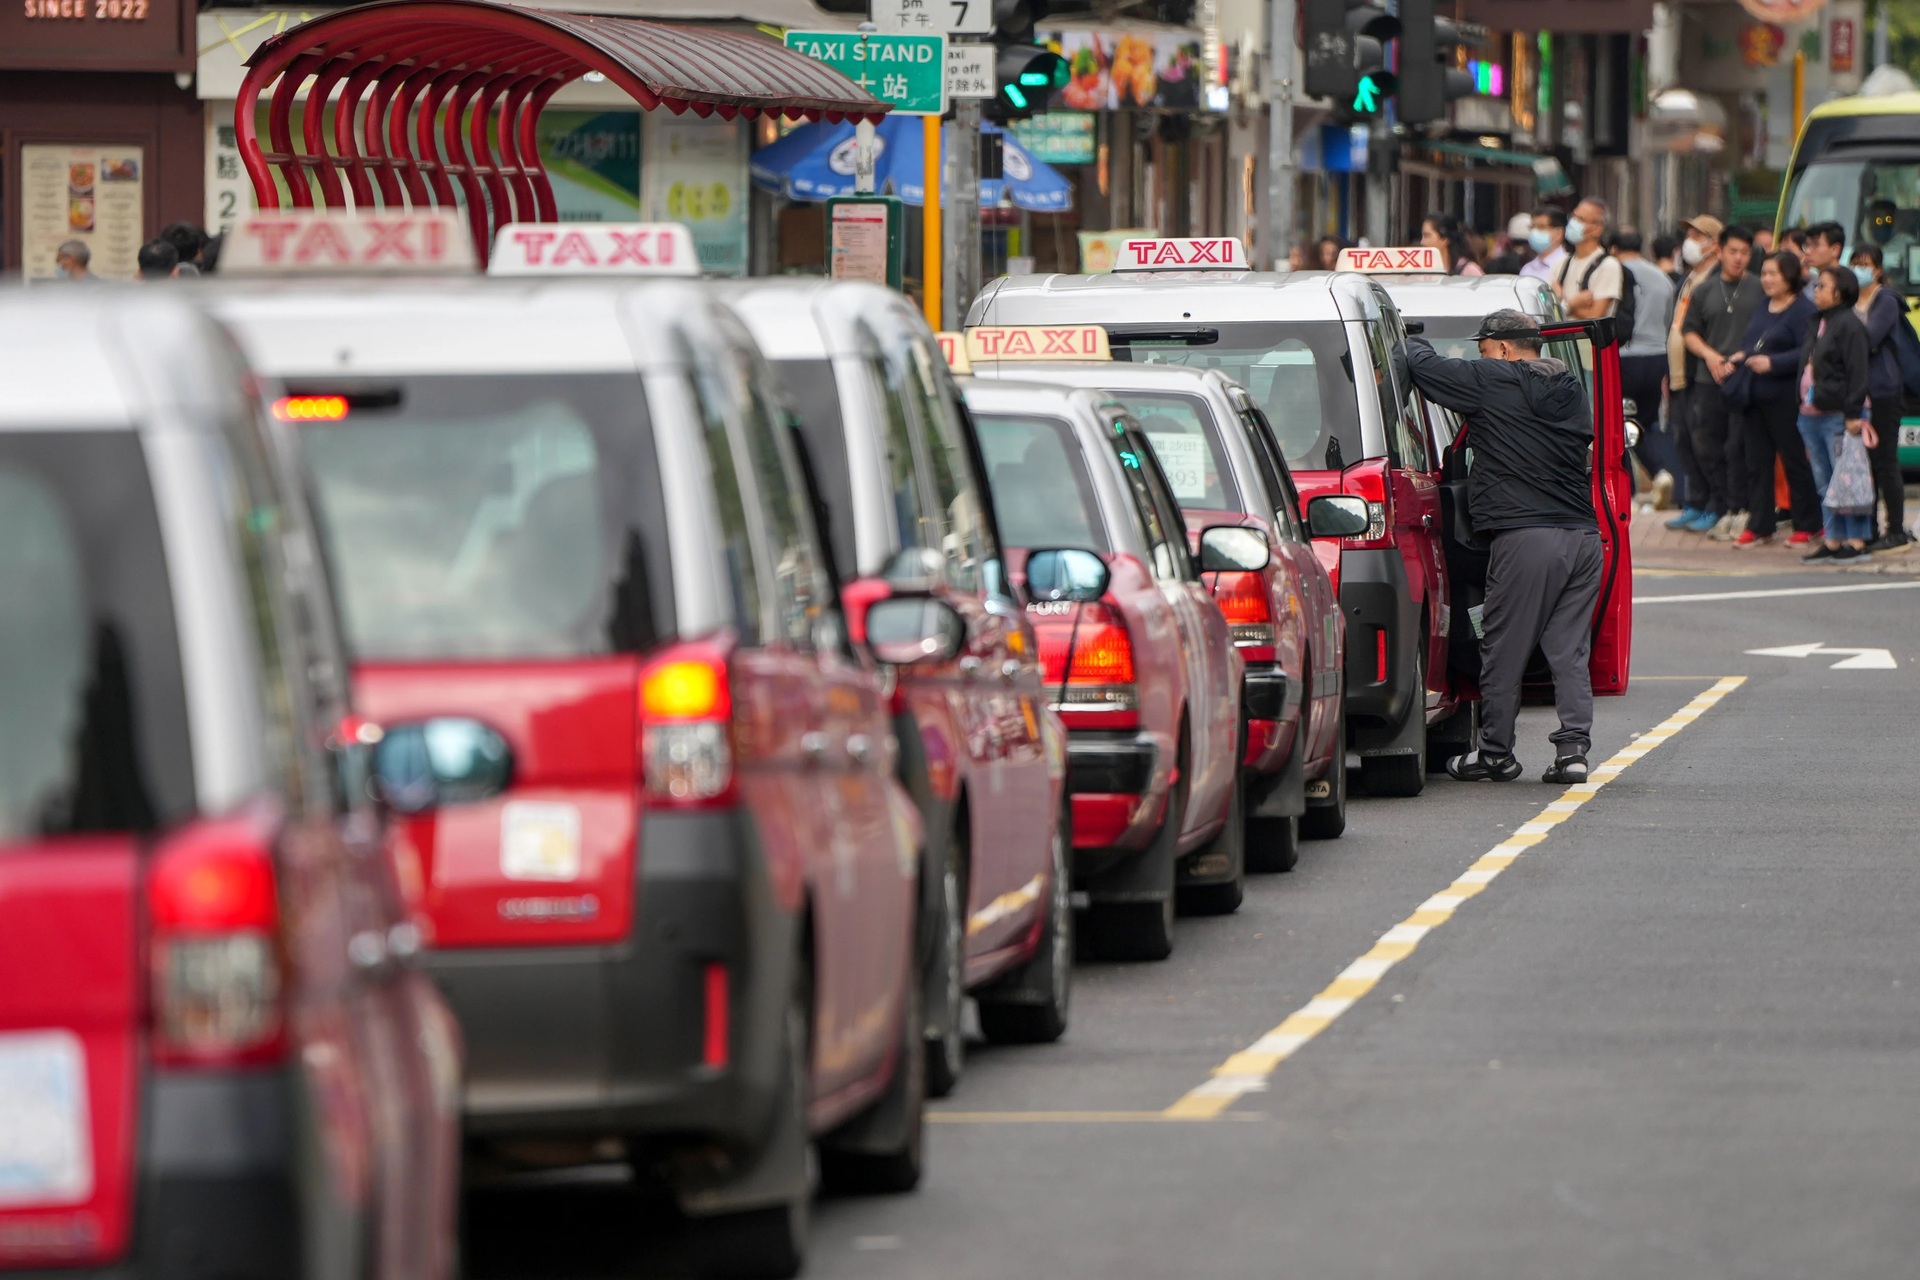 Đặc khu hành chính Hong Kong sẽ sớm tính điểm phạt bằng lái, áp dụng riêng cho xe taxi. Ảnh: SCMP